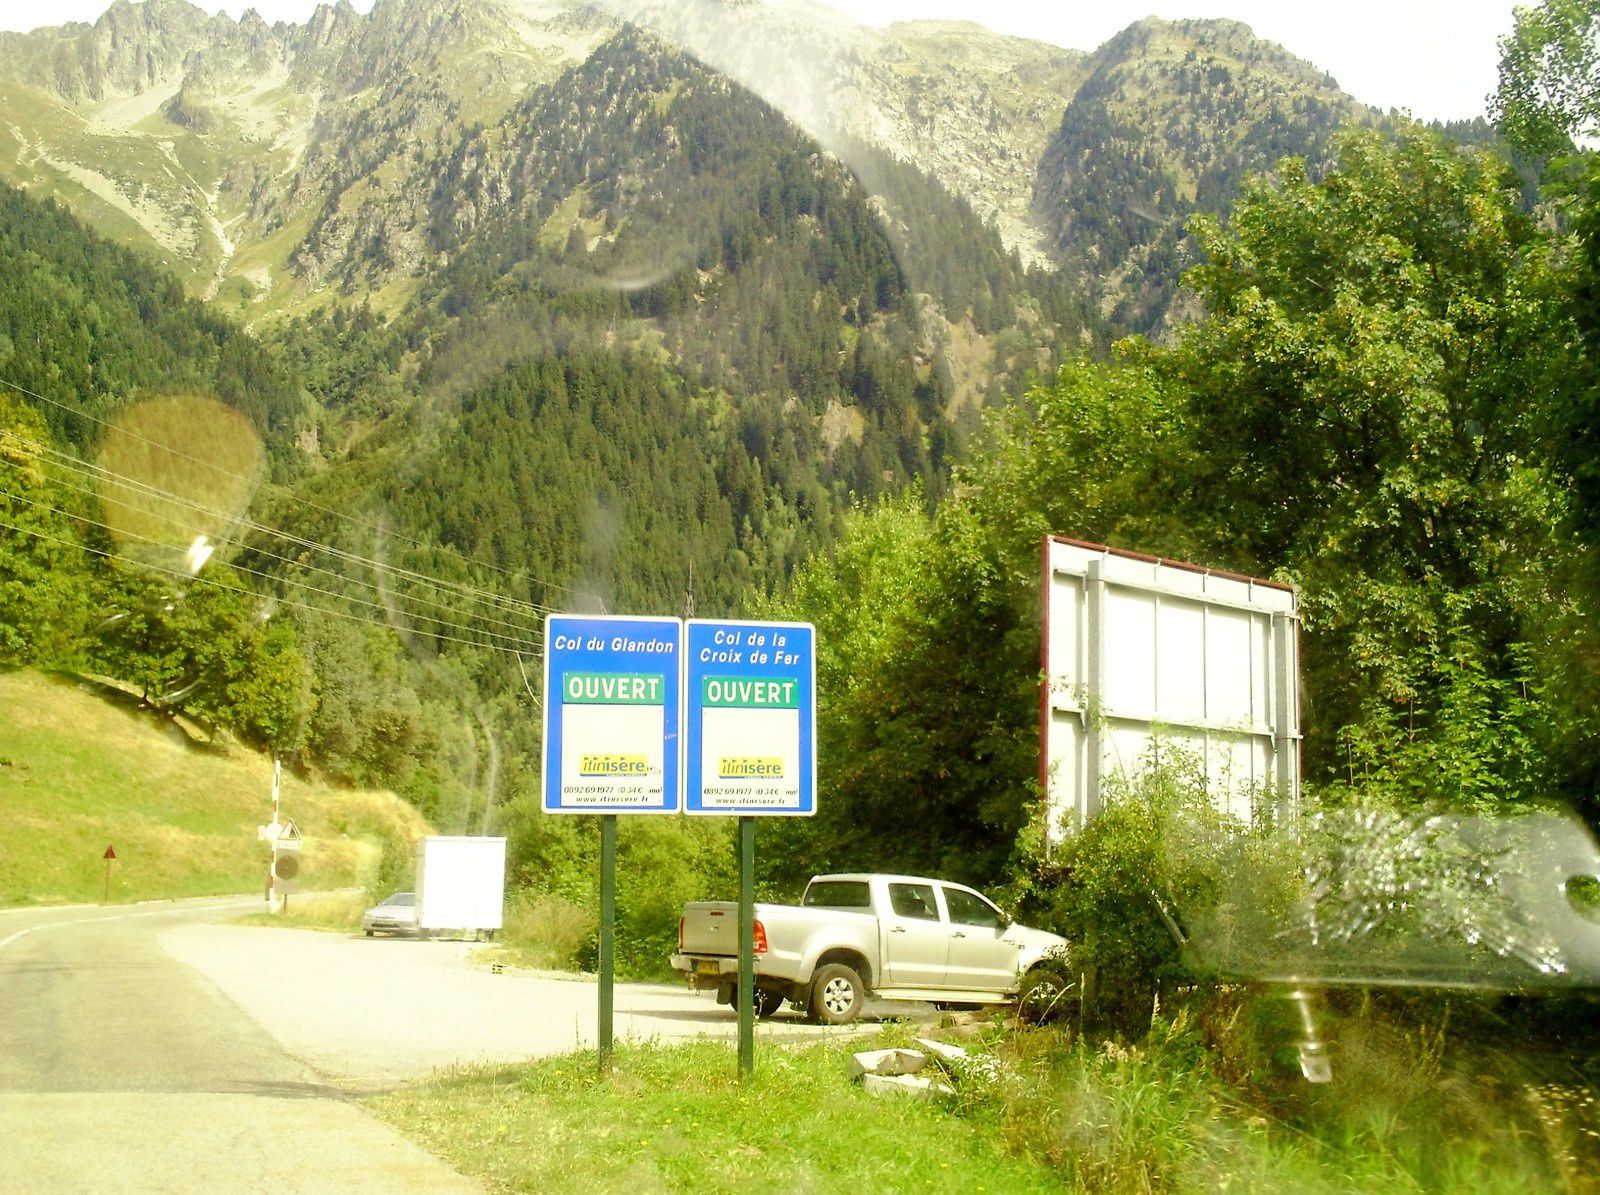 Goldwing - Notre voyage dans les Hautes-Alpes en Goldwing 1800 et Varadero 125 - 2ème jour 2/3